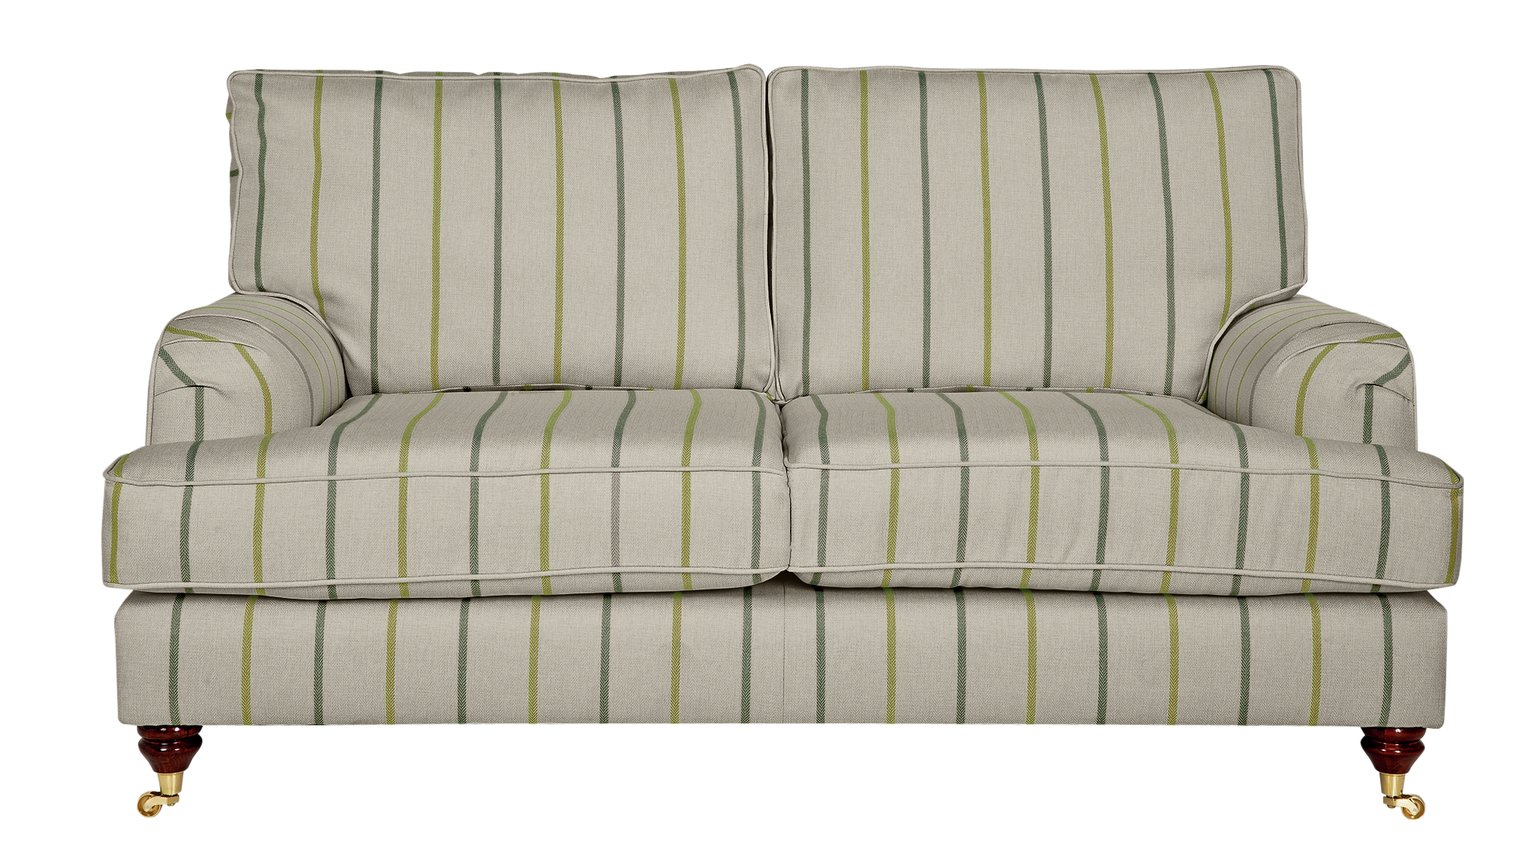 Argos Home Abberton 2 Seater Fabric Sofa - Natural & Green